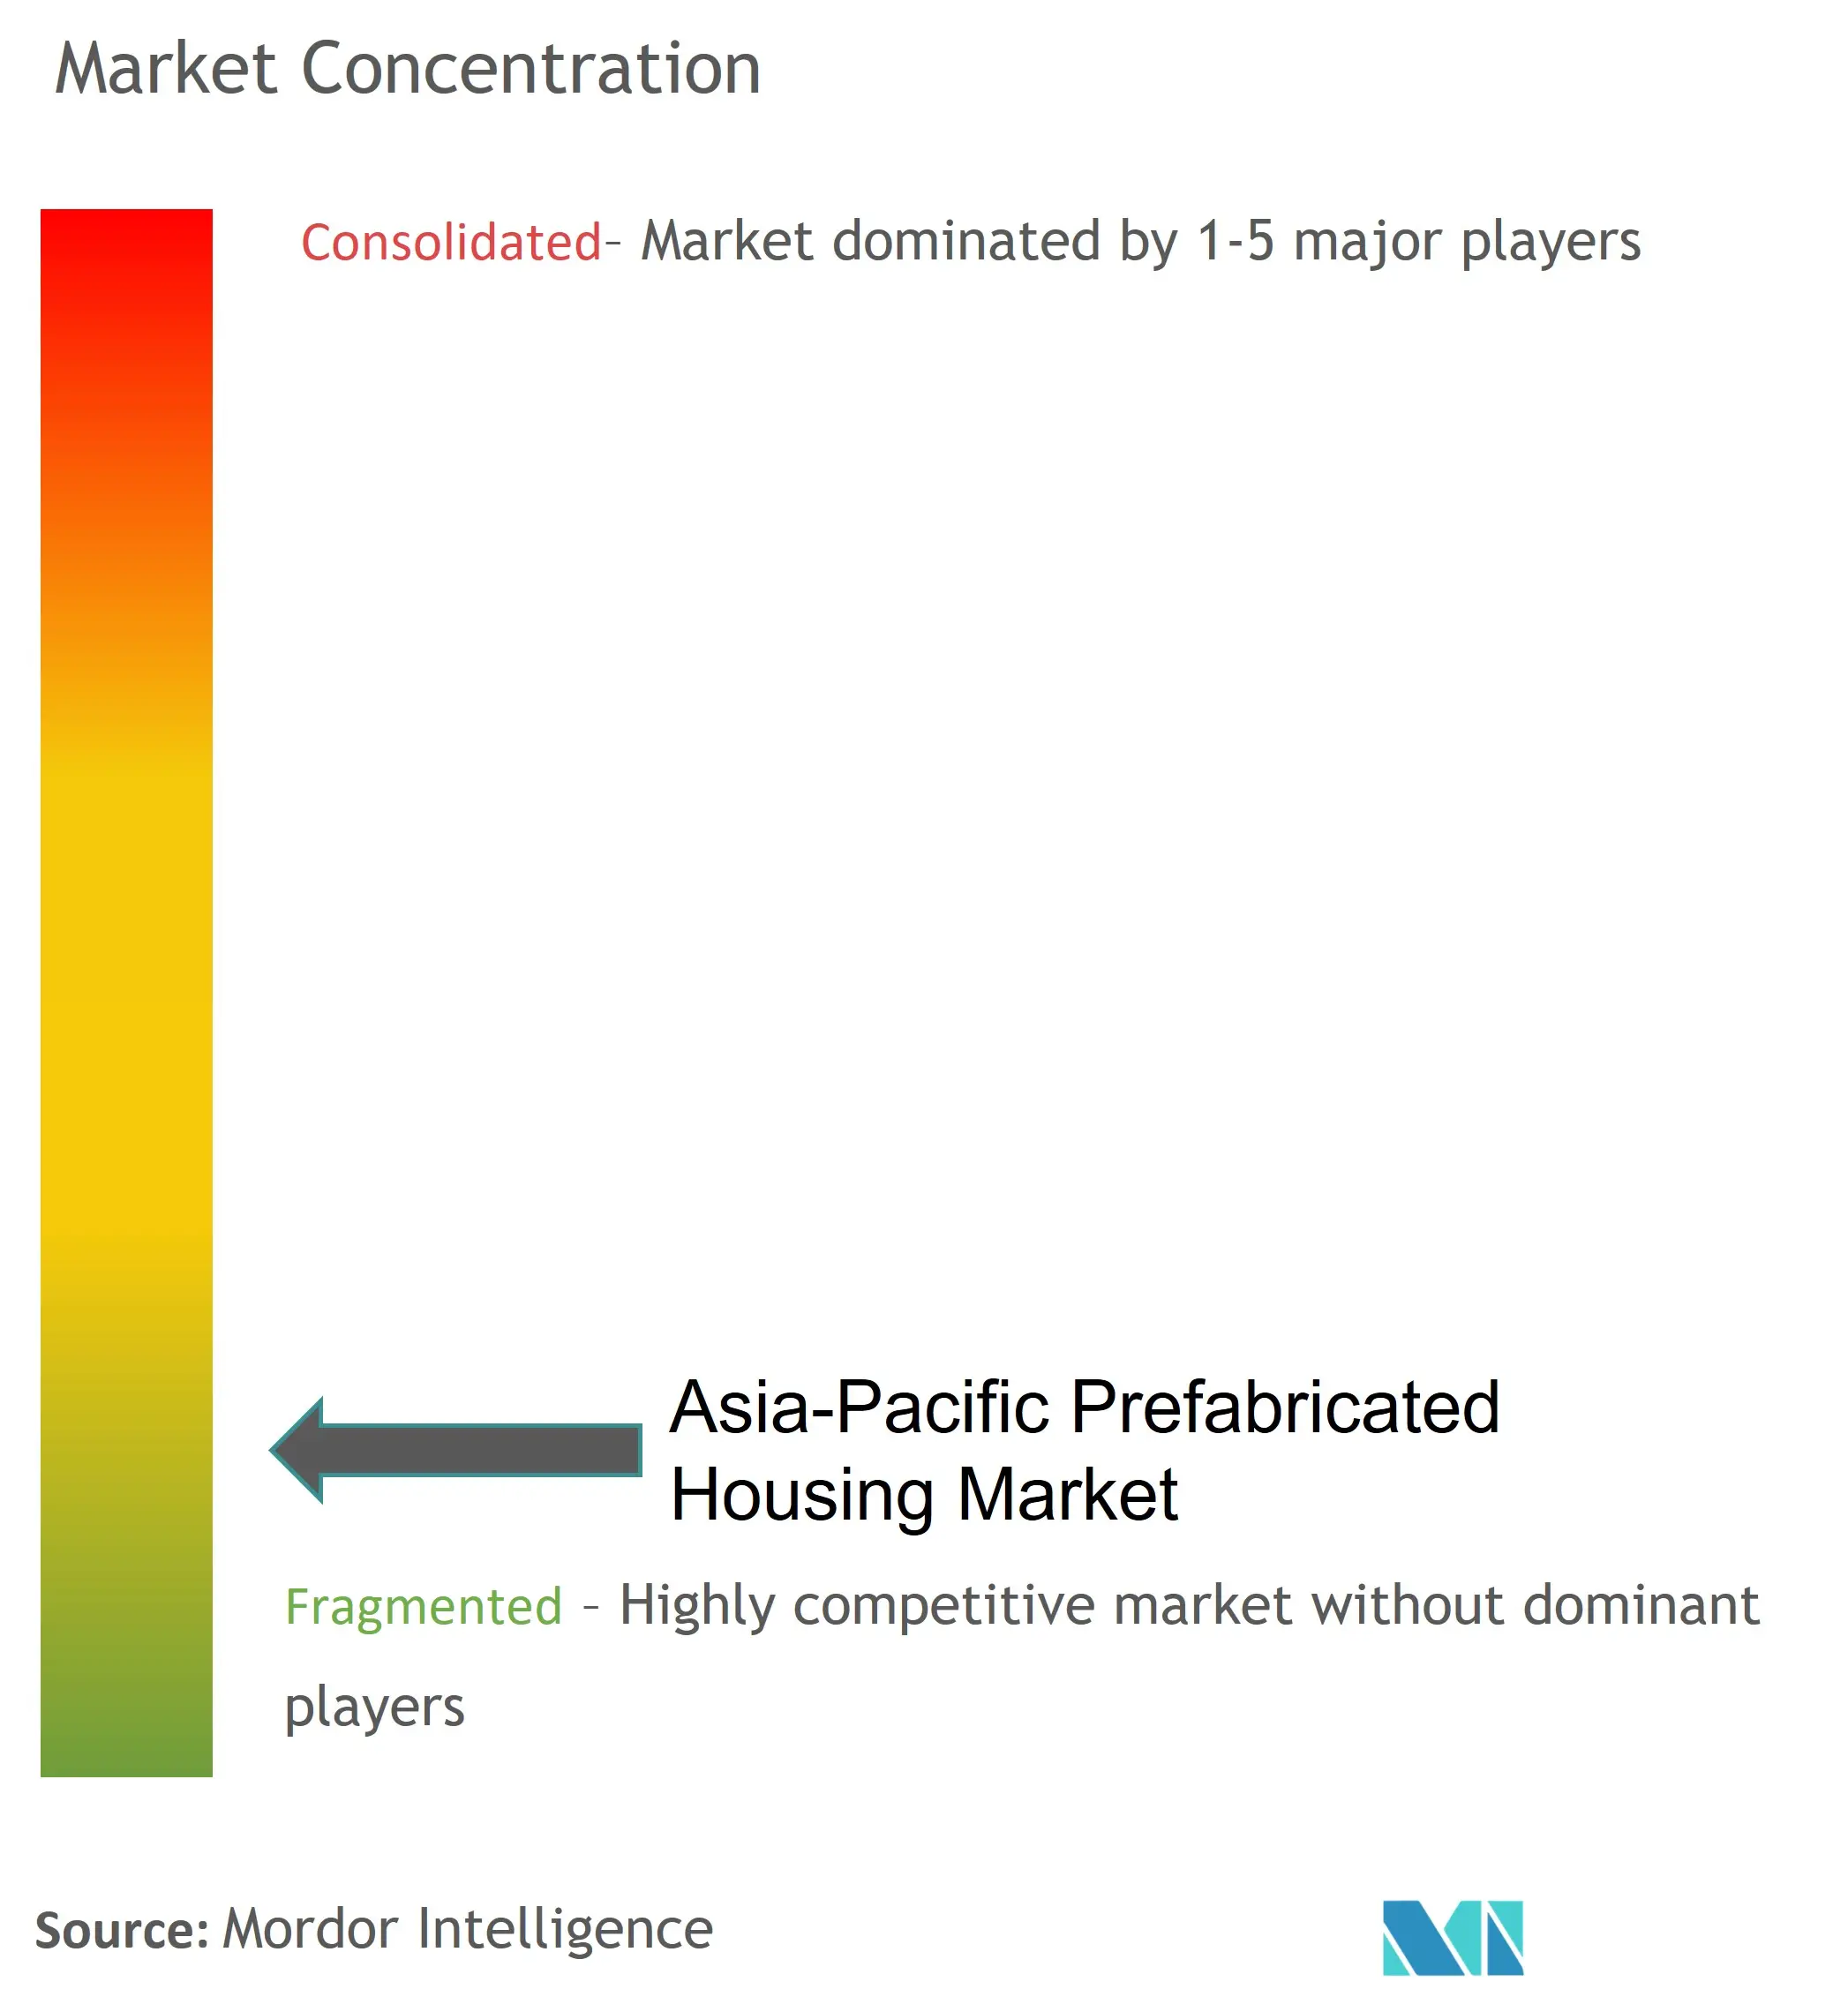 تركز سوق الإسكان الجاهز في منطقة آسيا والمحيط الهادئ